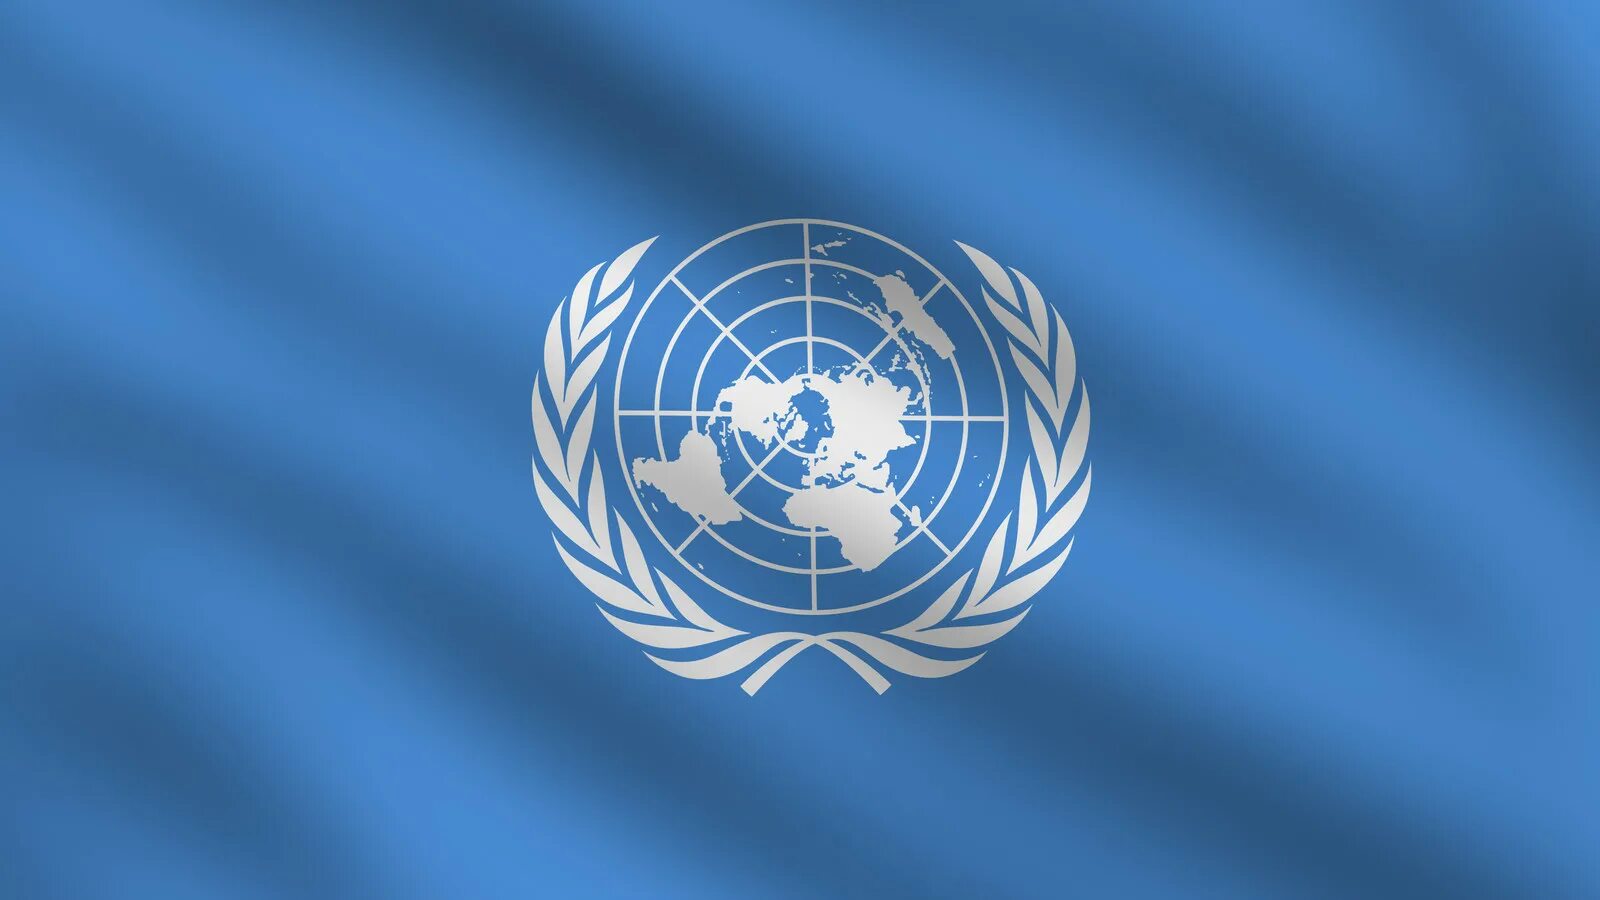 П оон. Организация Объединенных наций (ООН). Генеральная Ассамблея ООН флаг. Флаг организации Объединенных наций. Международные организации ООН.